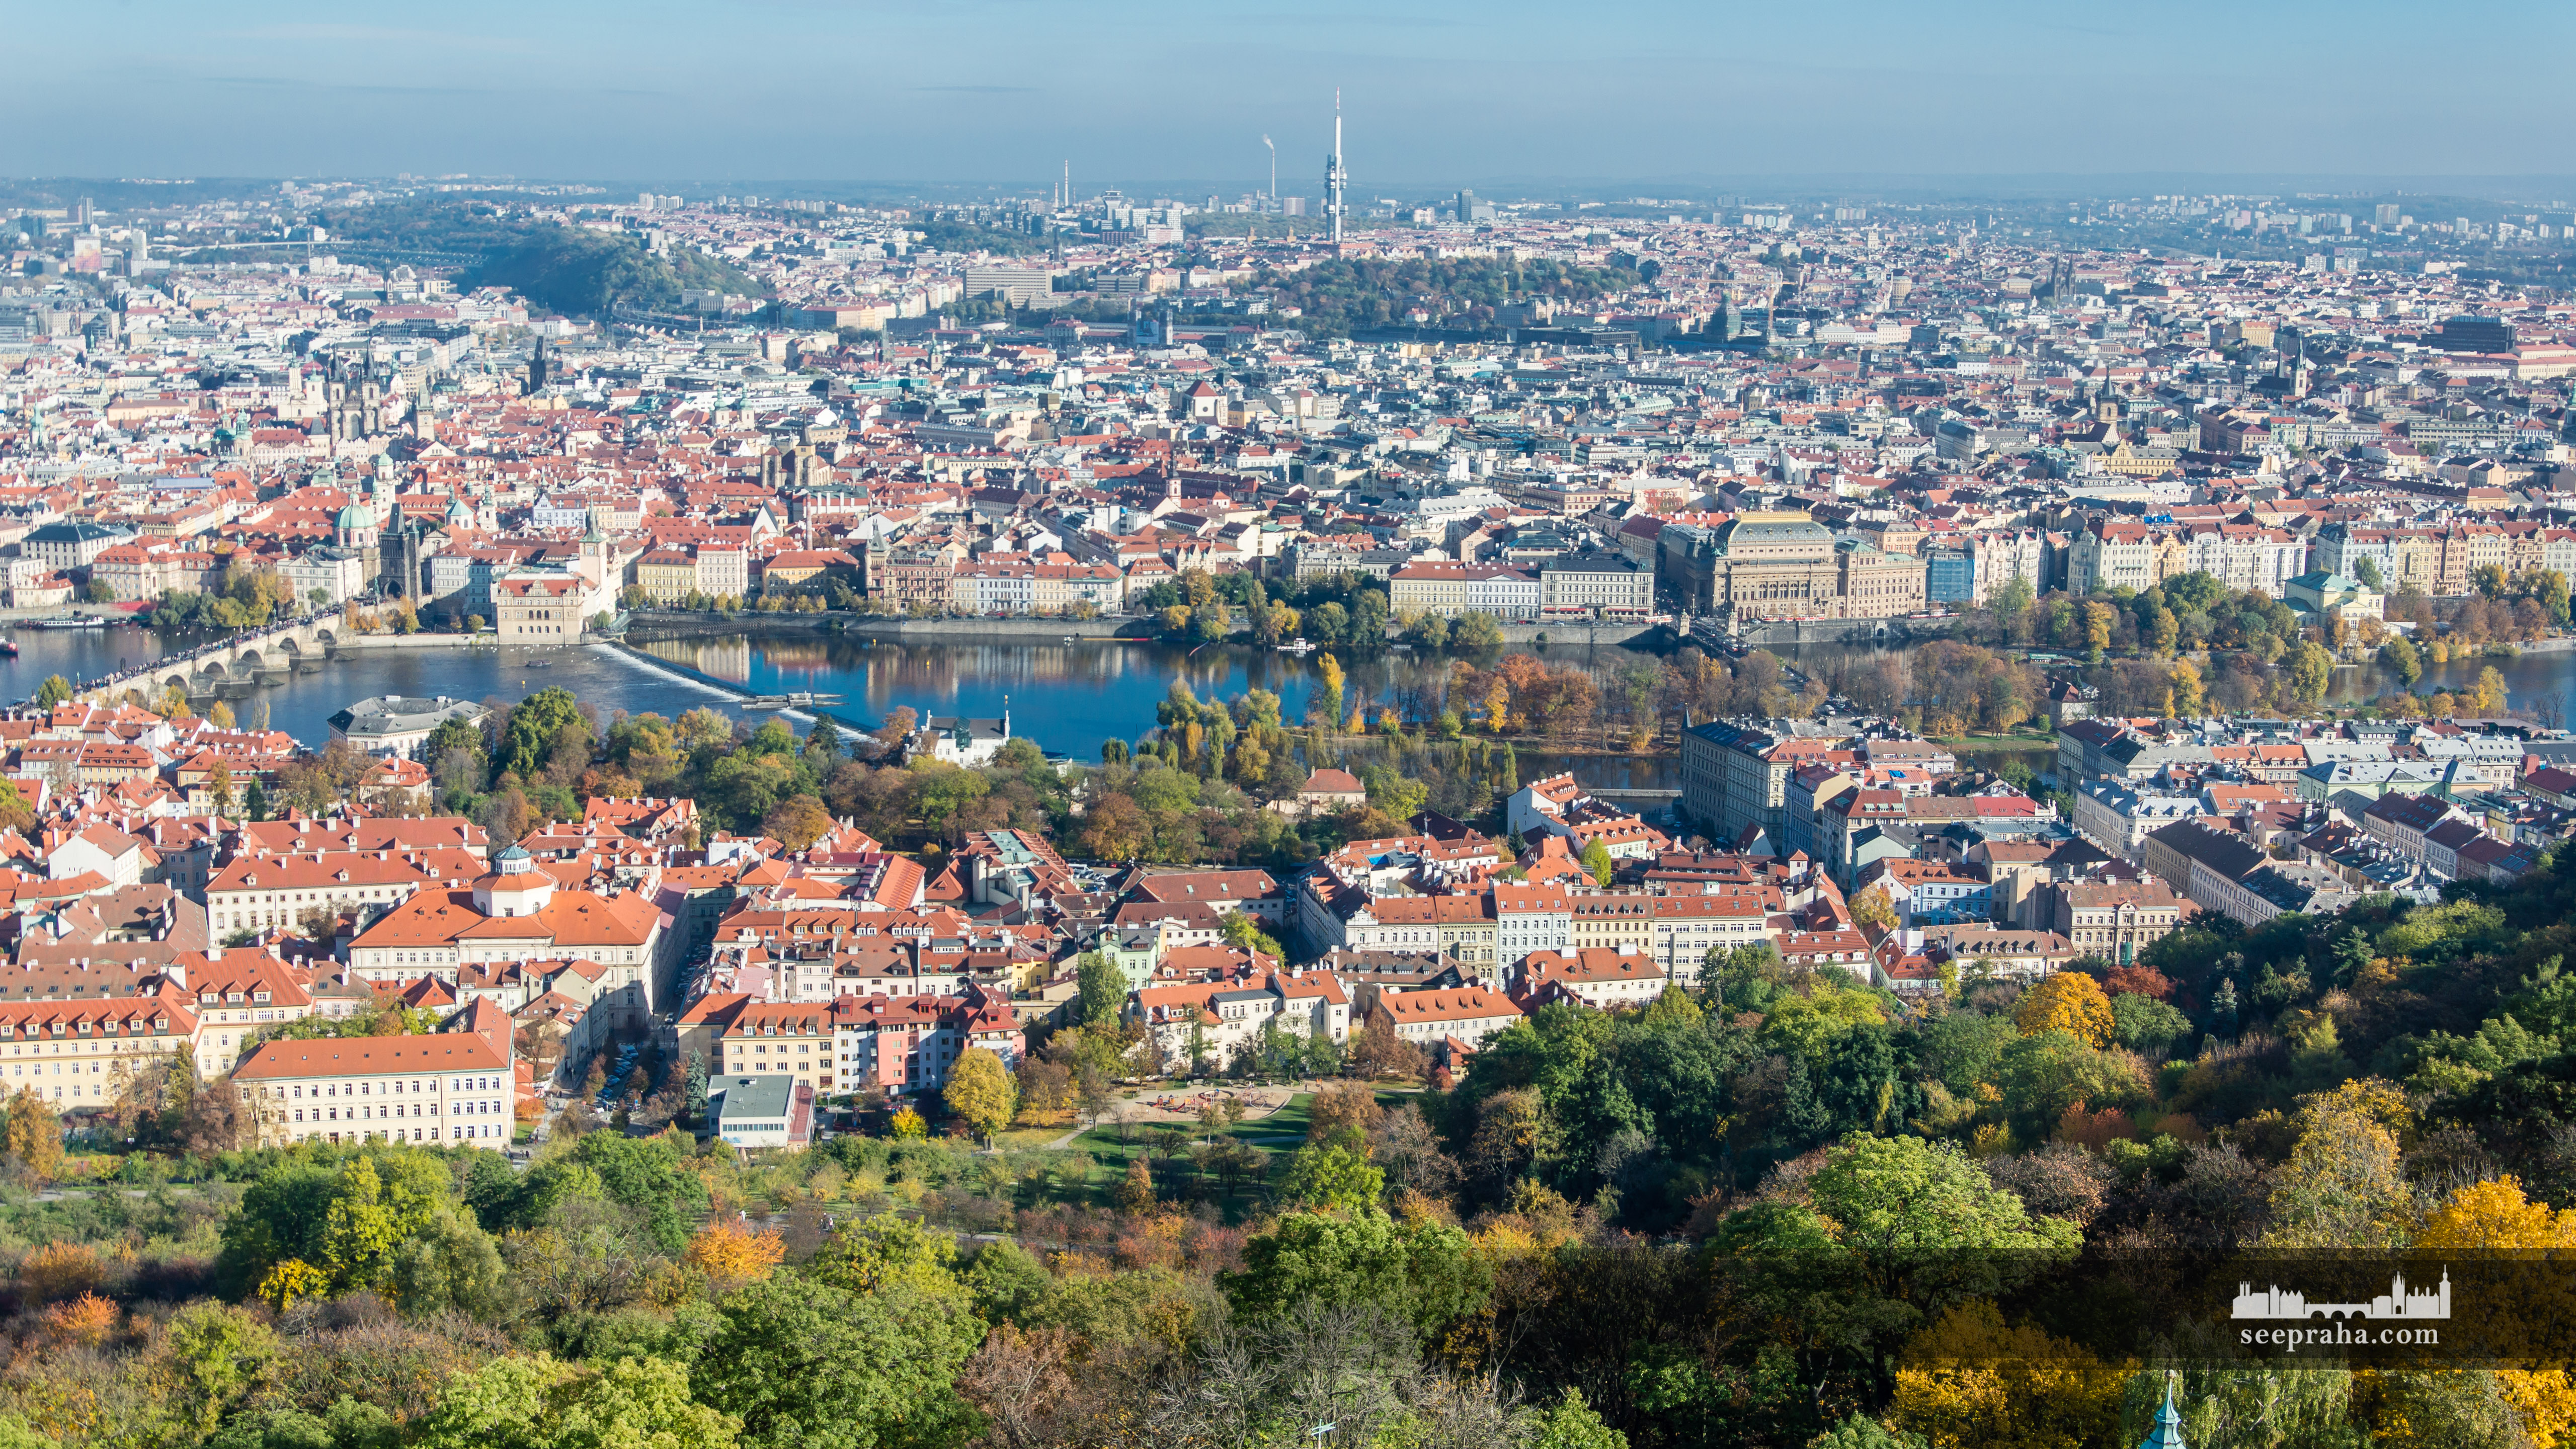 Widok miasta z wieży na wzgórzu Petřín, Praga, Czechy